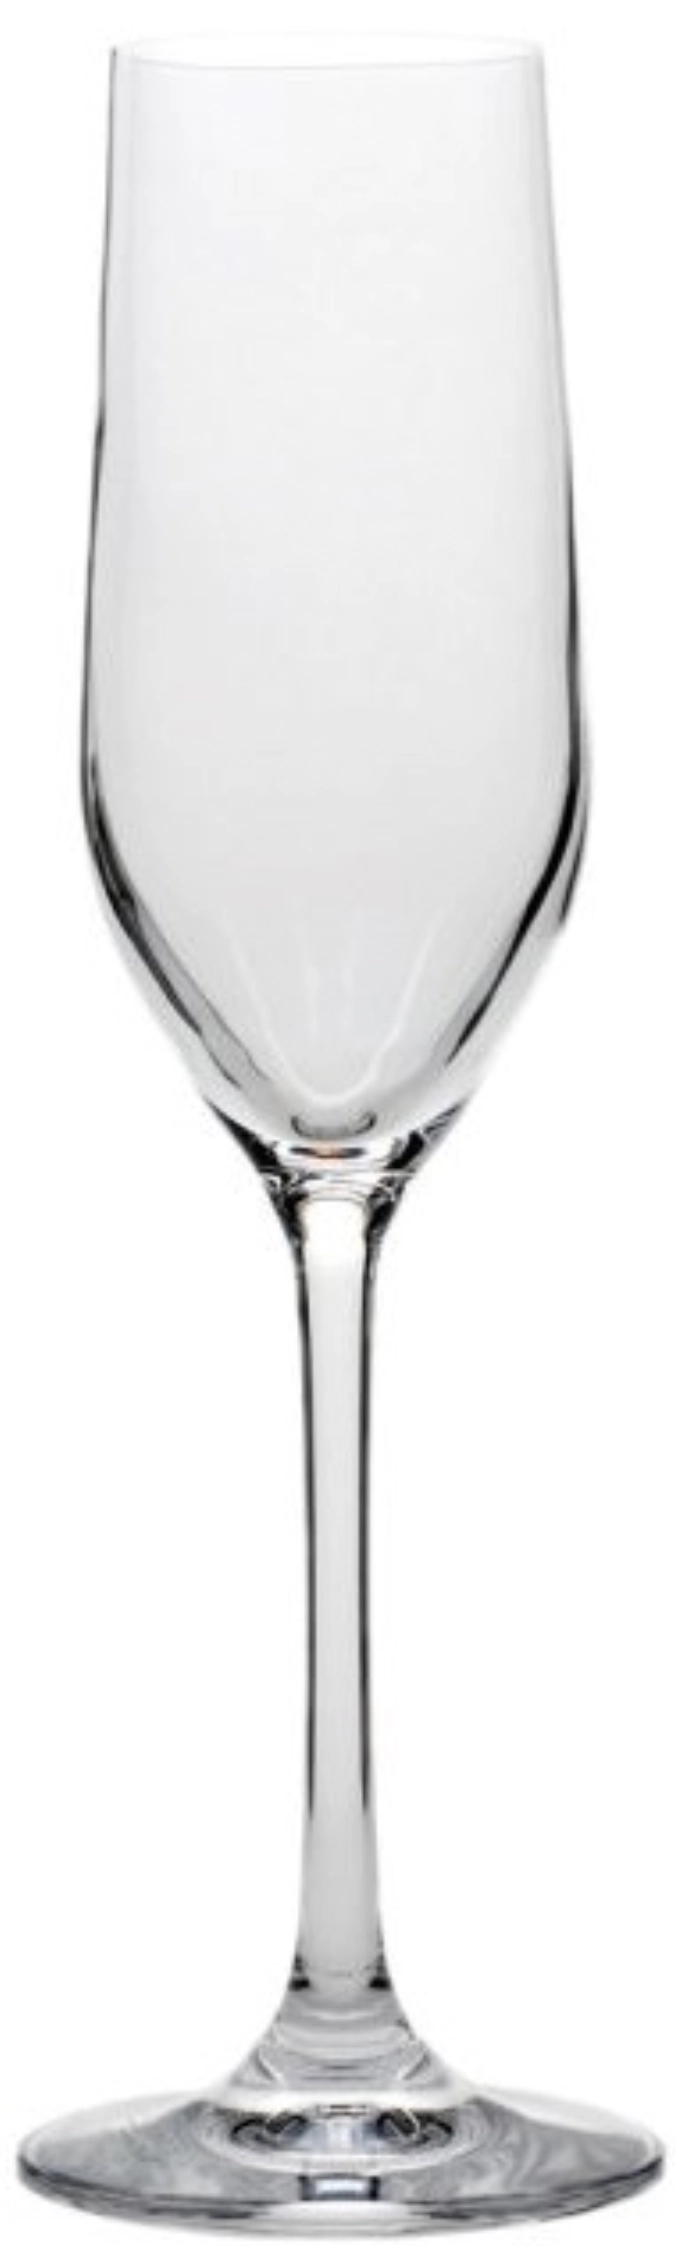 Coupe à champagne grand cuvée, 1dl calibrée, 185ml h : 219mm